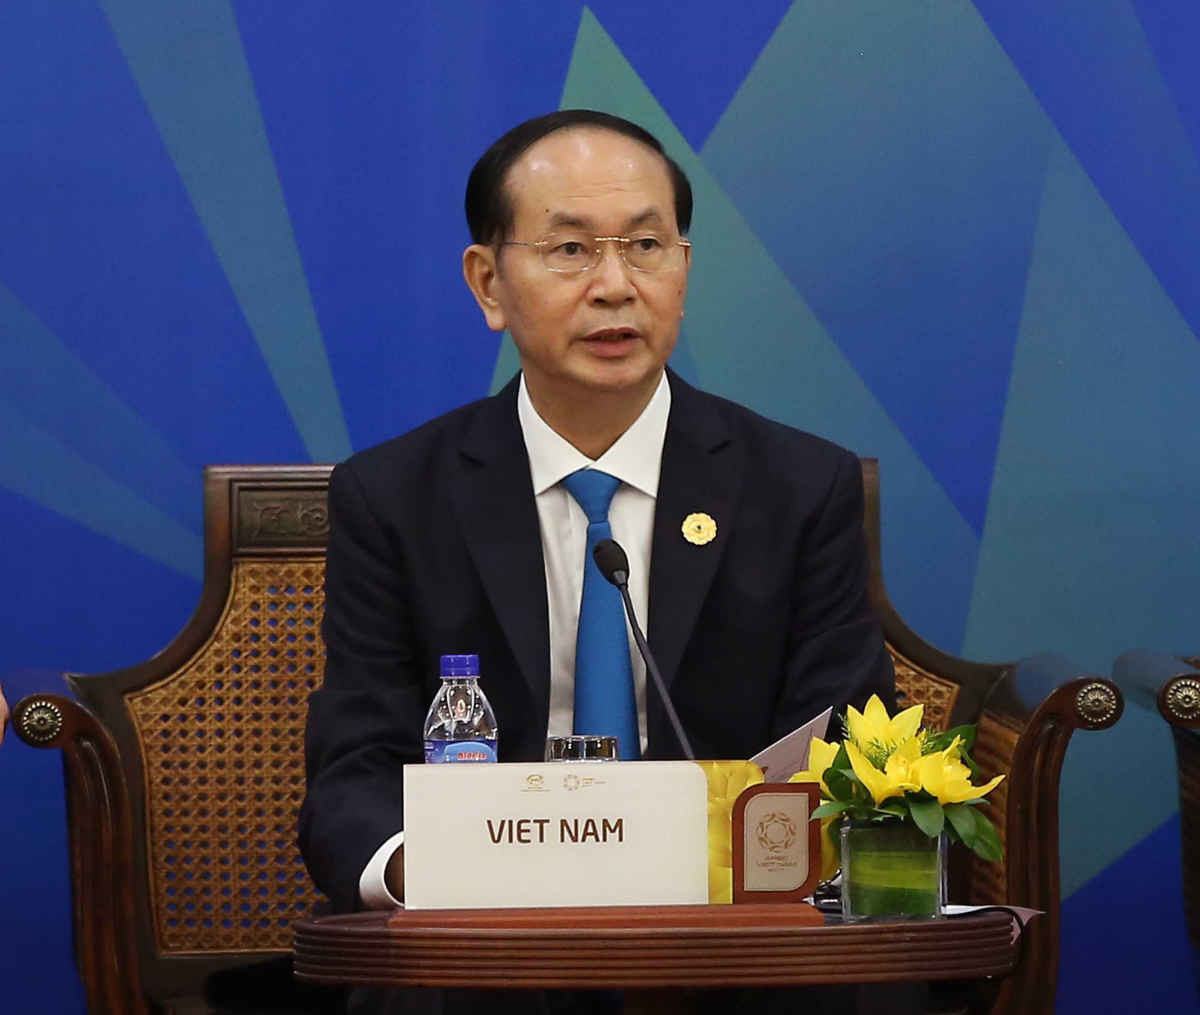 Chủ tịch nước Trần Đại Quang, Chủ tịch APEC Việt Nam 2017 phát biểu tại Đối thoại